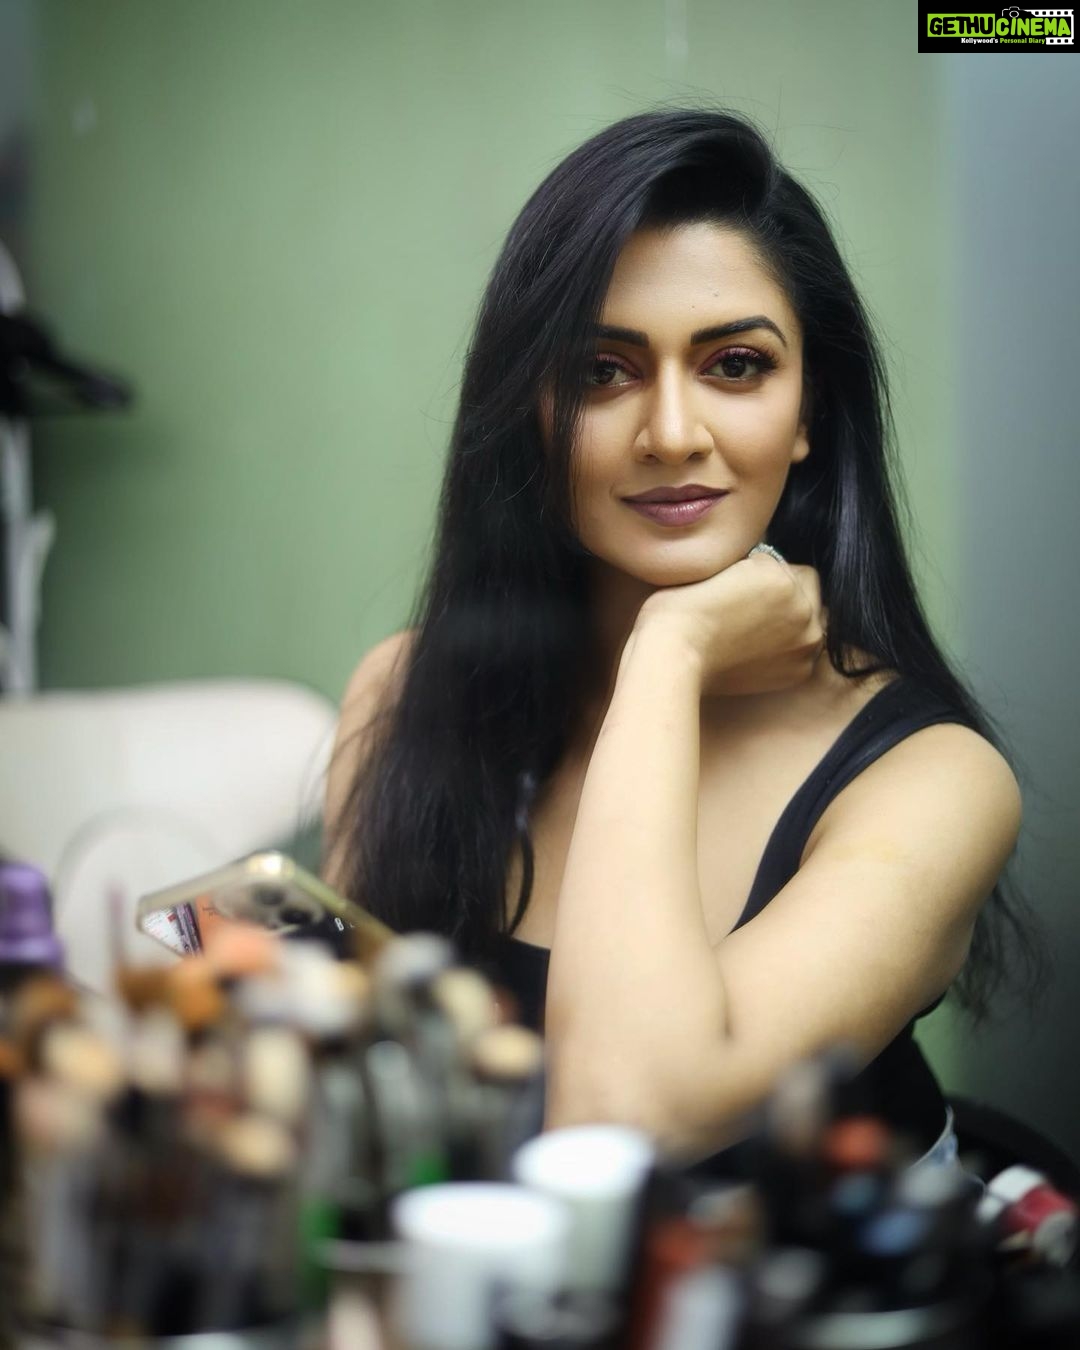 Actress Vimala Raman HD Photos and Wallpapers November 2022 - Gethu Cinema